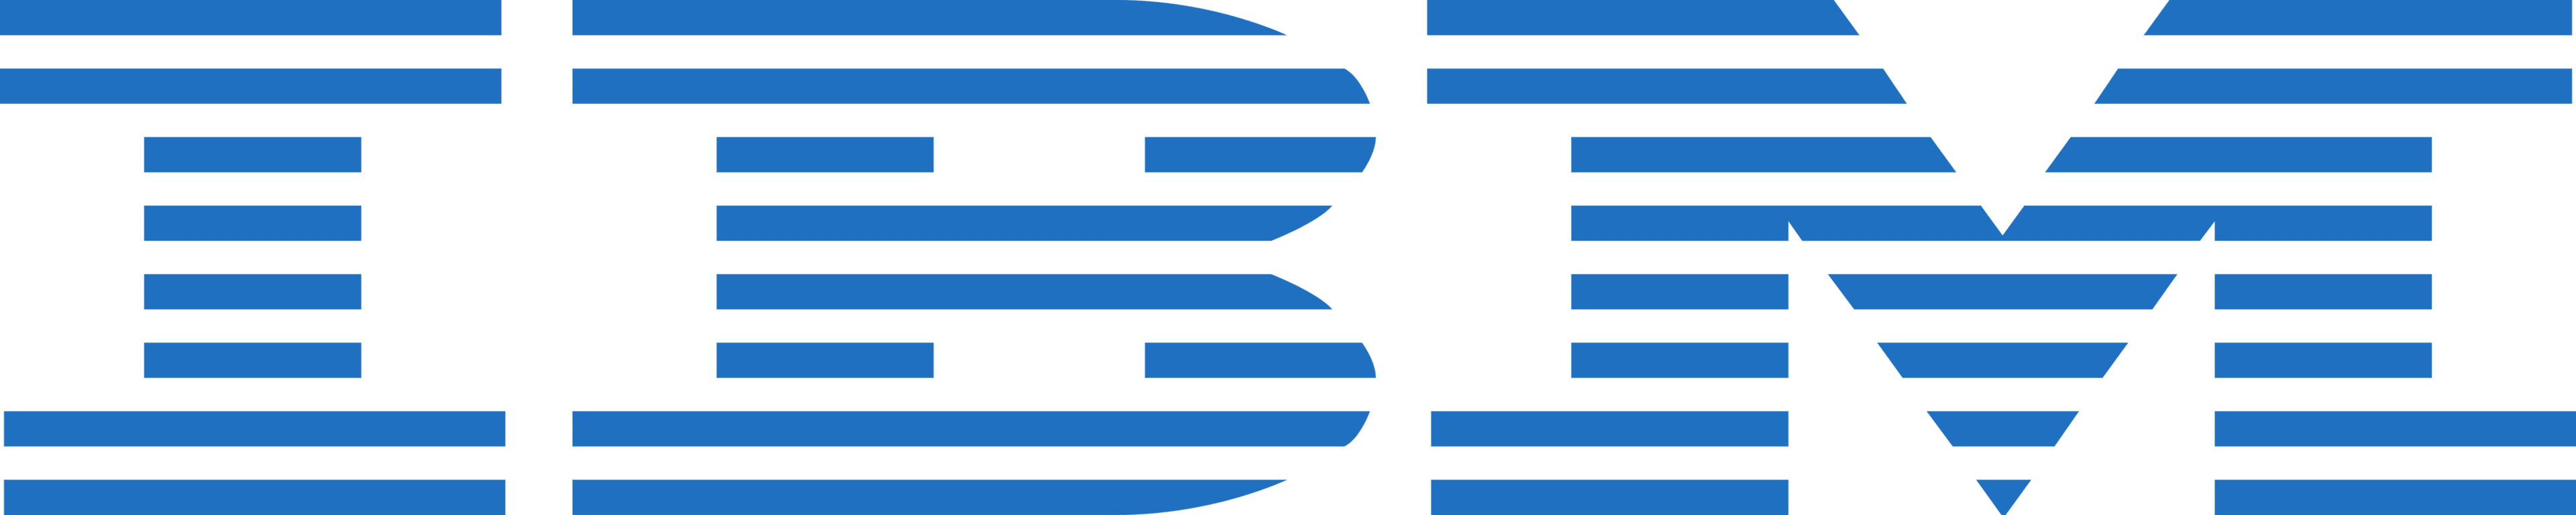 IBM Data Scientist Interview Guide